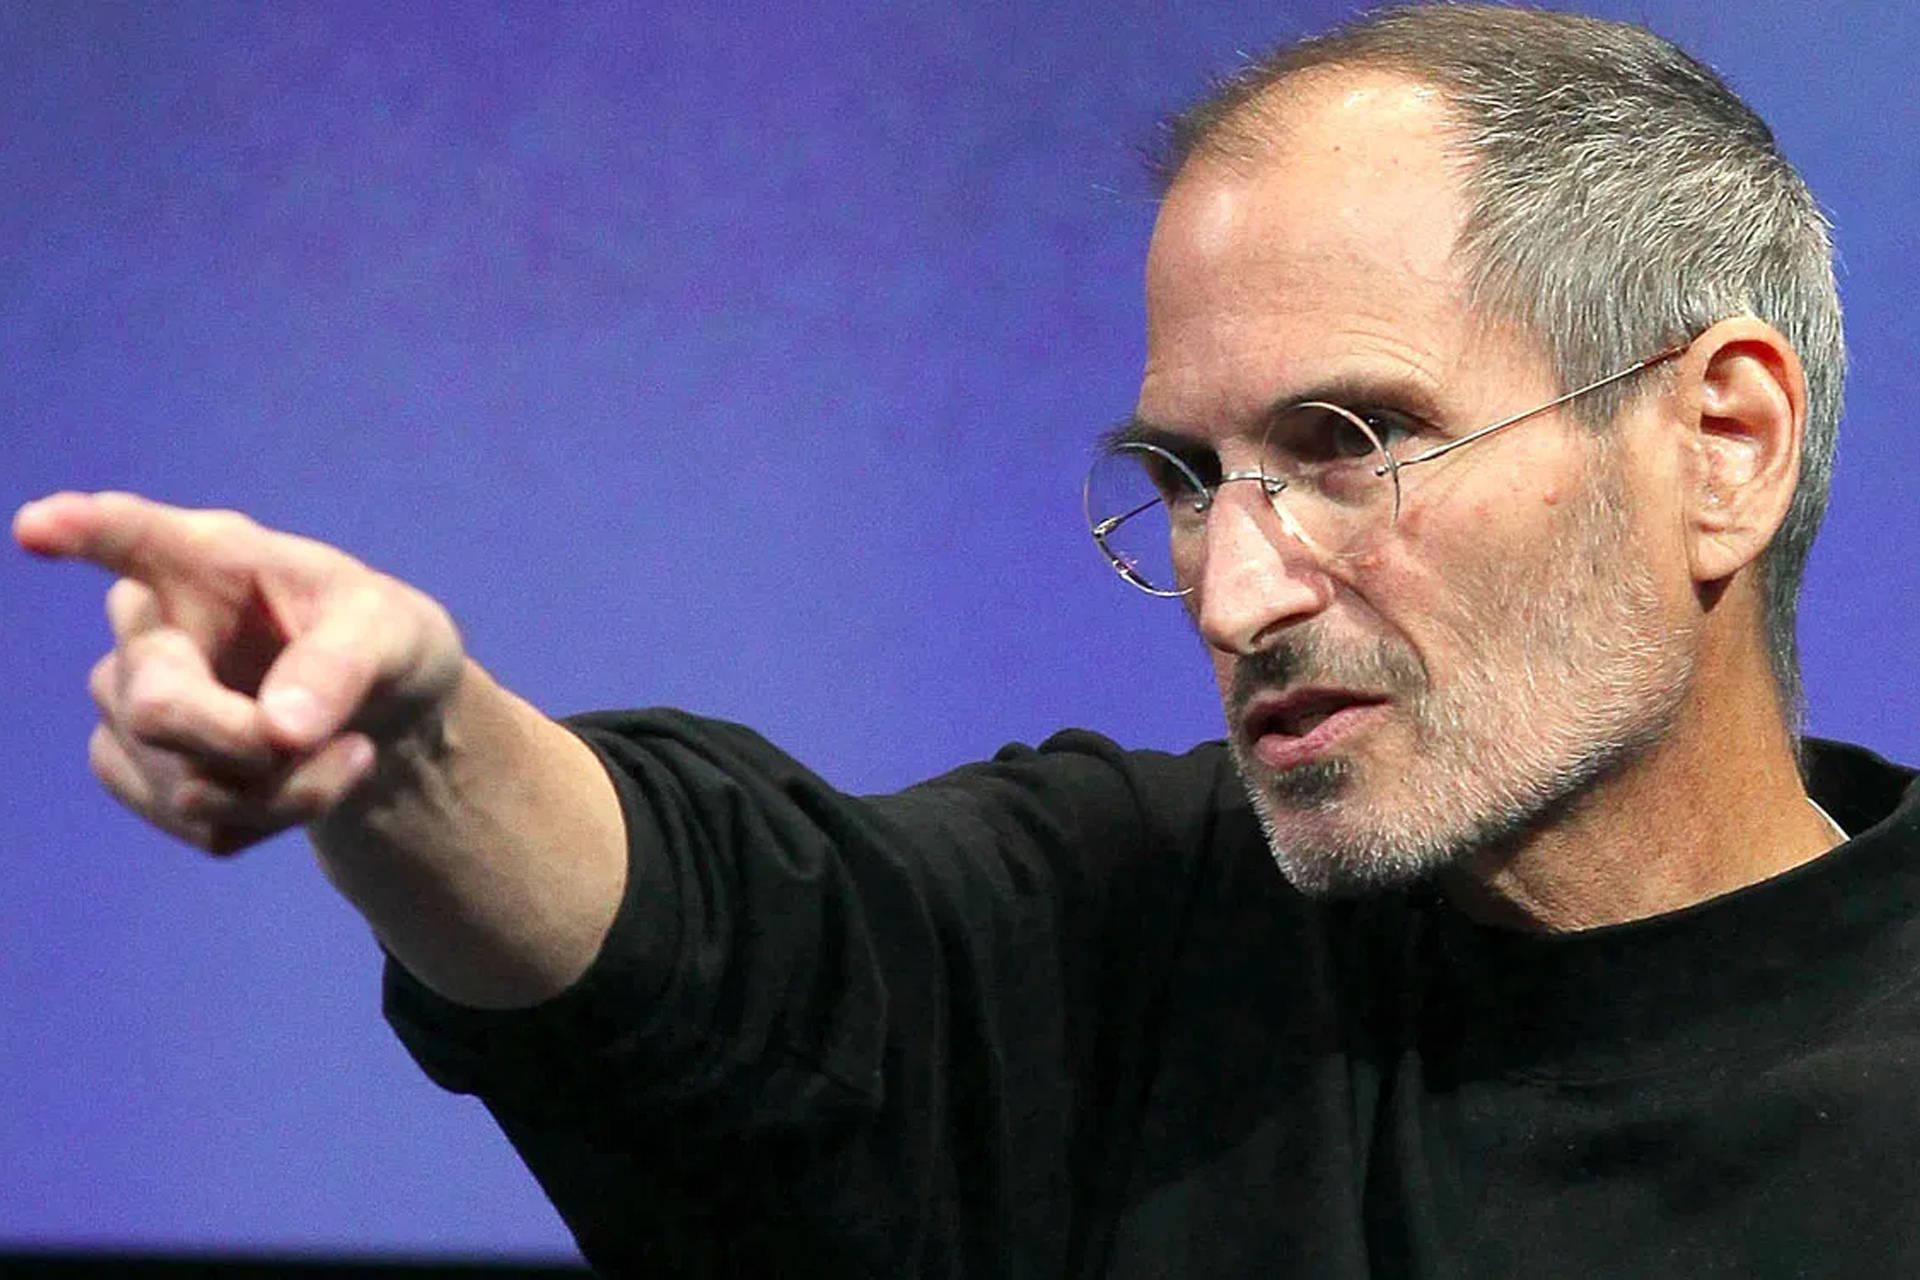 استیو جابز / Steve Jobs مدیرعامل قبلی اپل در حال اشاره با دست راست